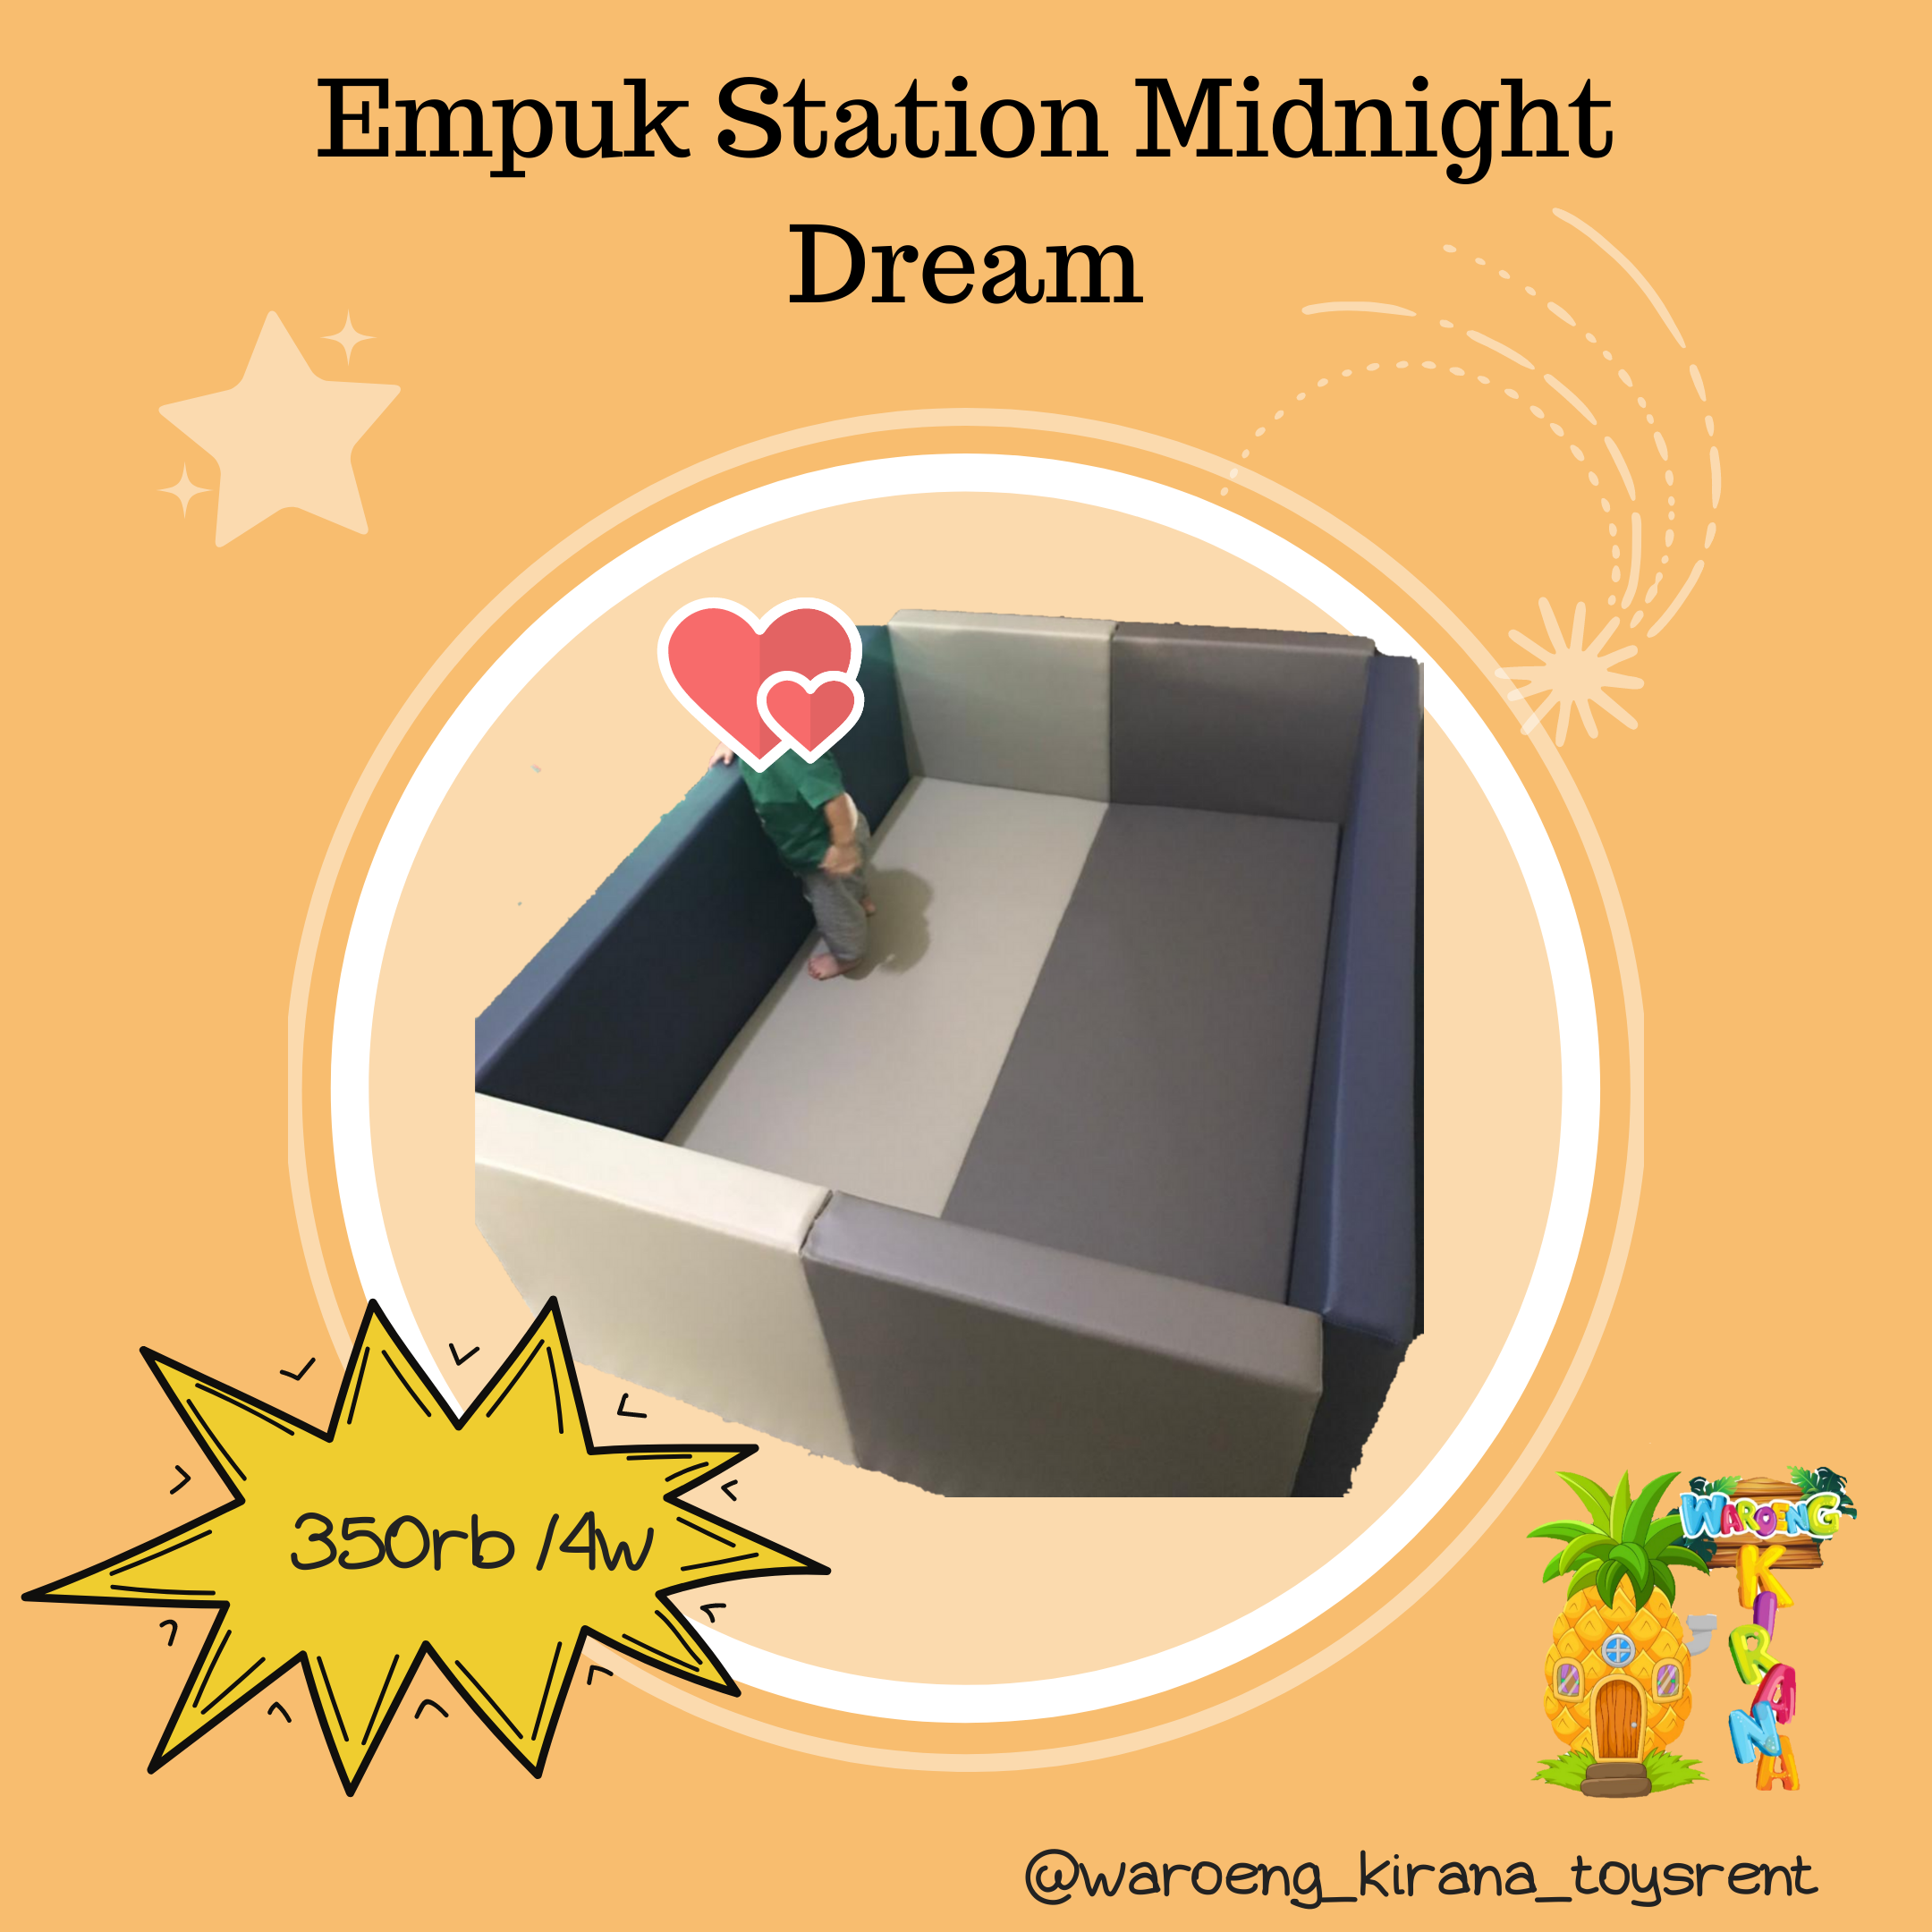 EMPUK STATION MIDNIGHT DREAM